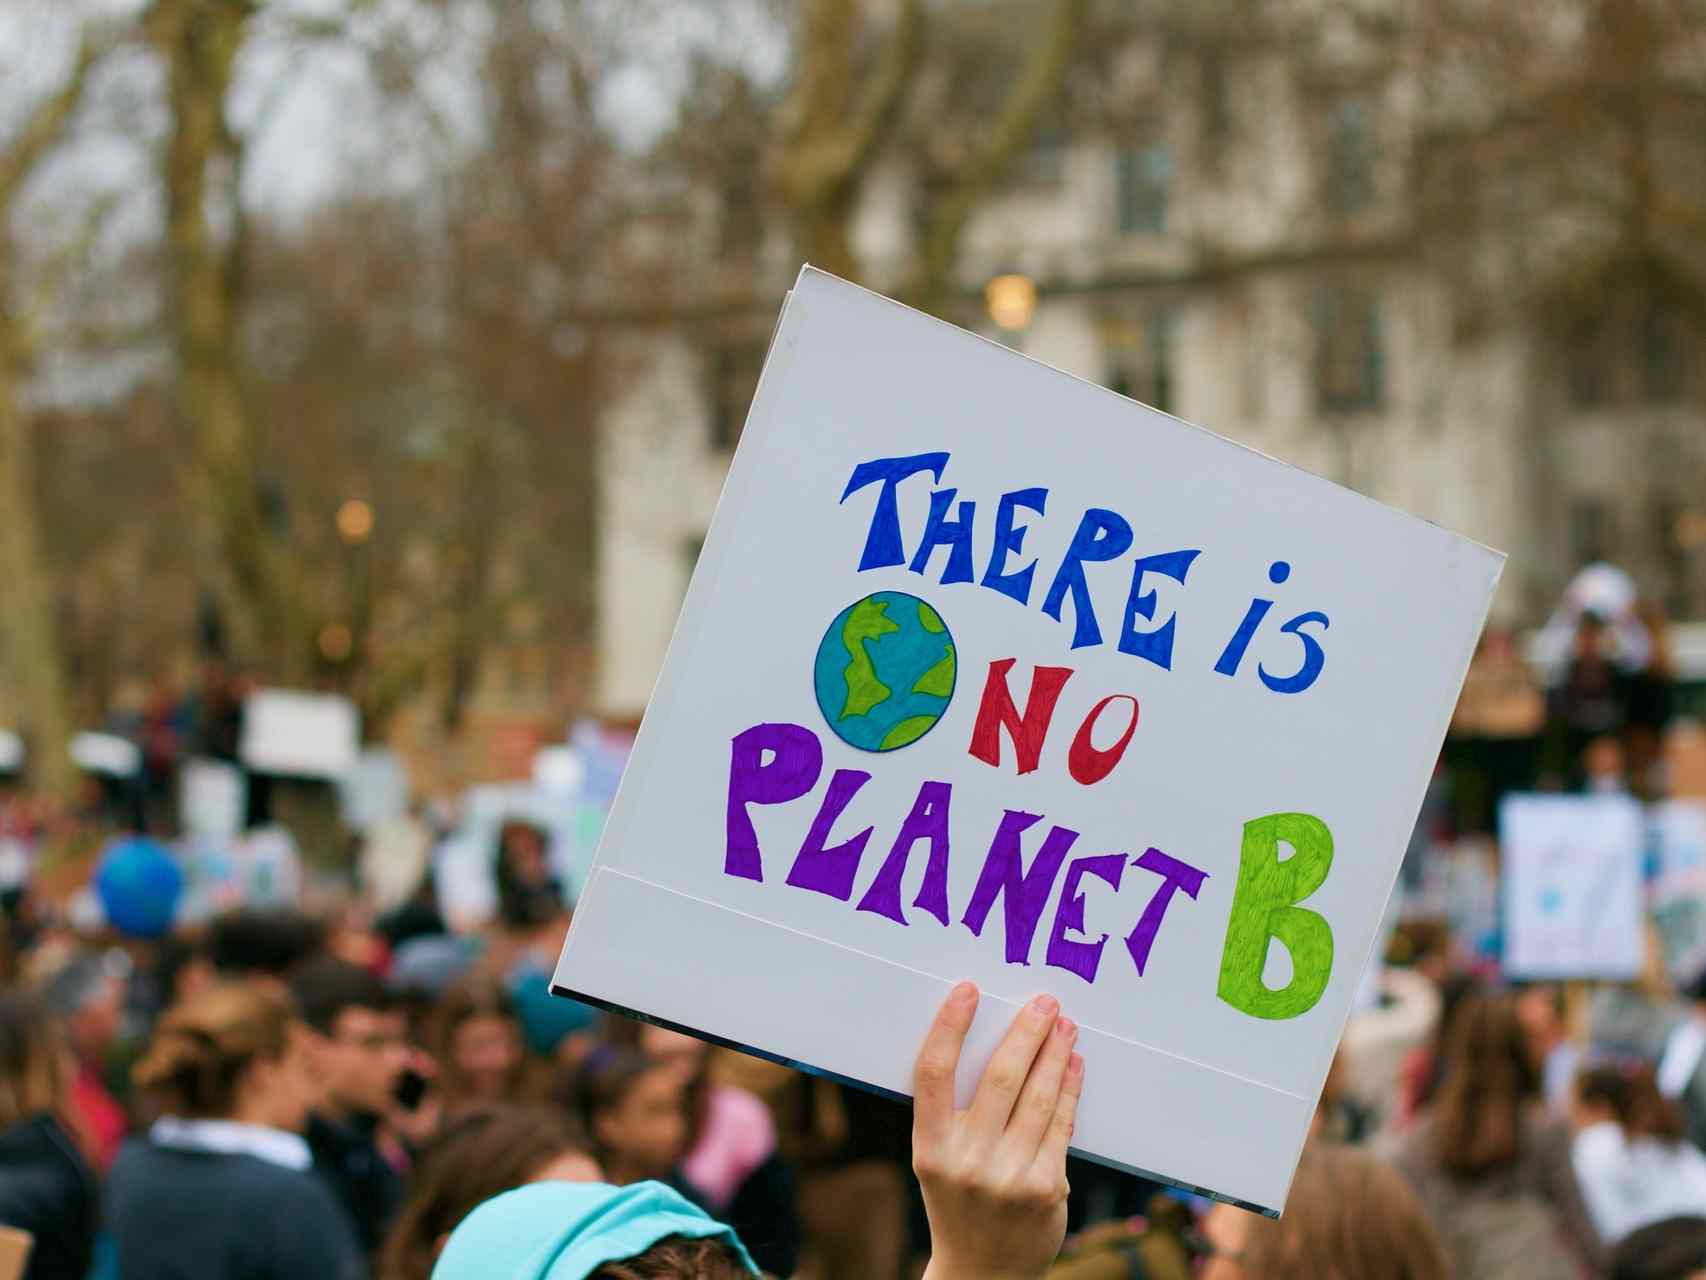 Klimaaktivismus - weiß und privilegiert? Eine Diskussion über Barrieren und Intersektionalität im Klimaaktivismus